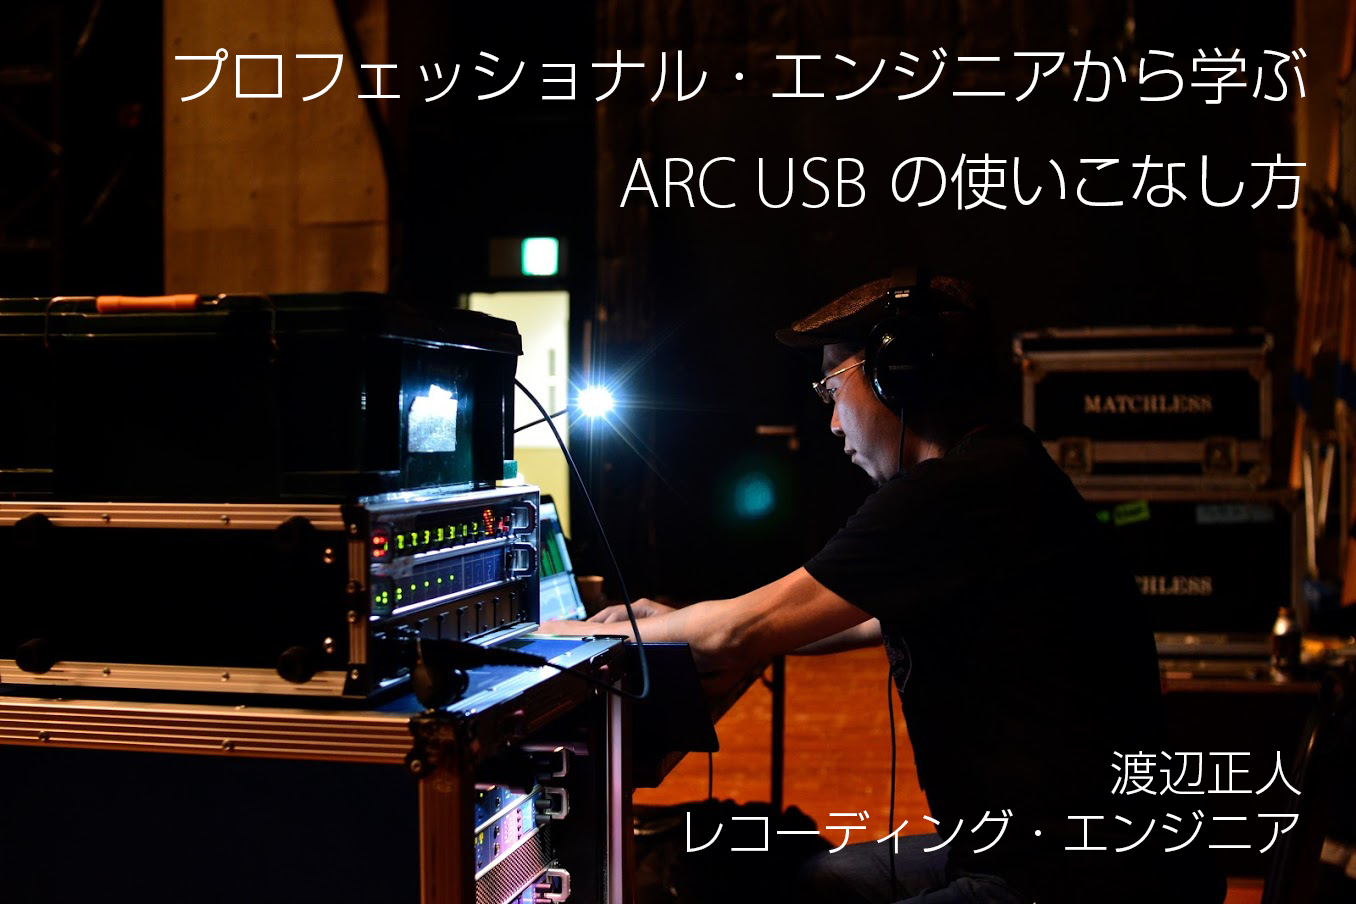 渡辺正人 - プロフェッショナル・エンジニアから学ぶARC USBの 